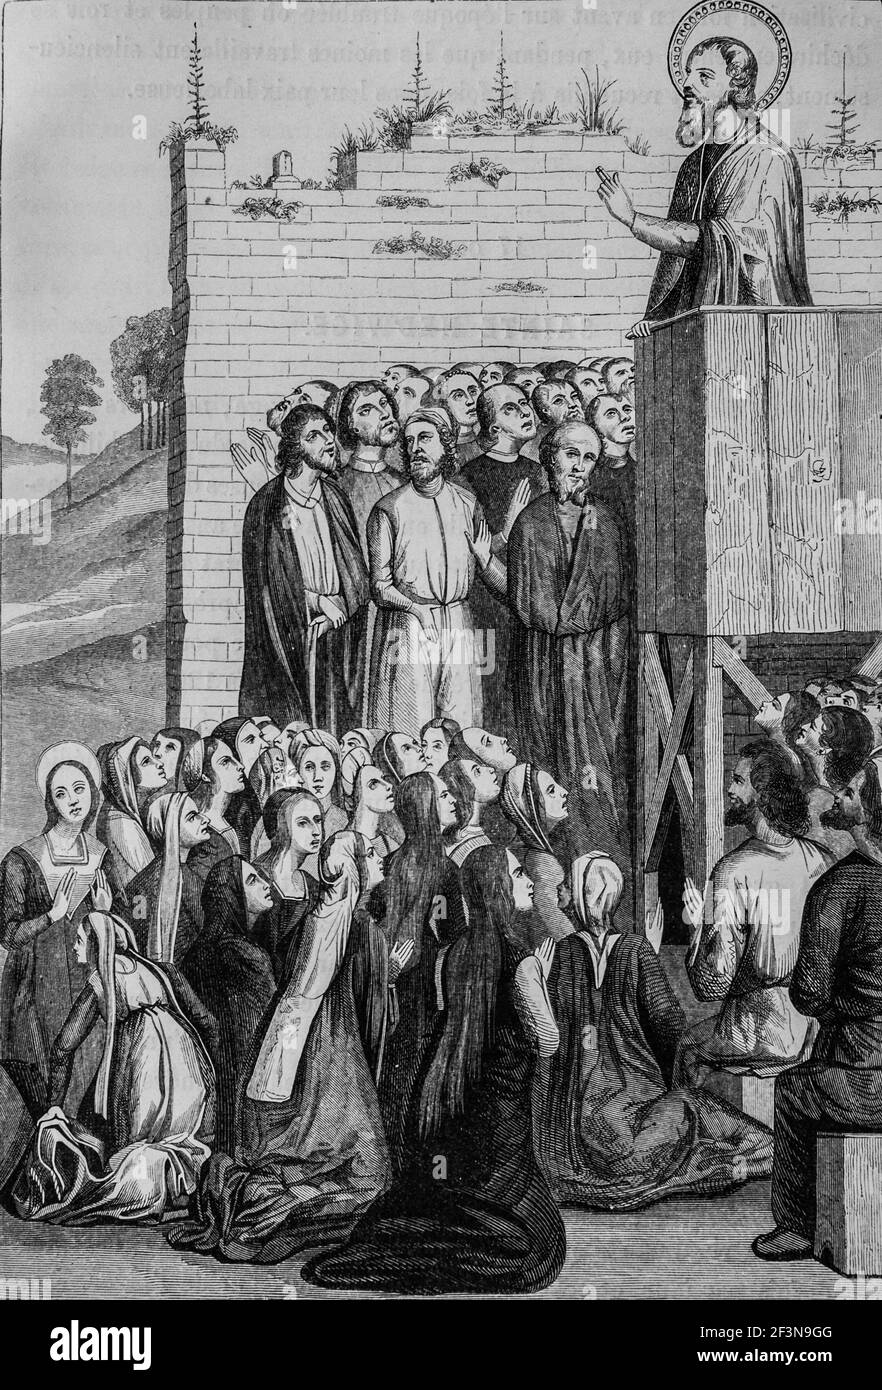 predication d'un apotre du christianisme, la vie illustre des saints,editeur firmin -didot, 1887 Foto Stock